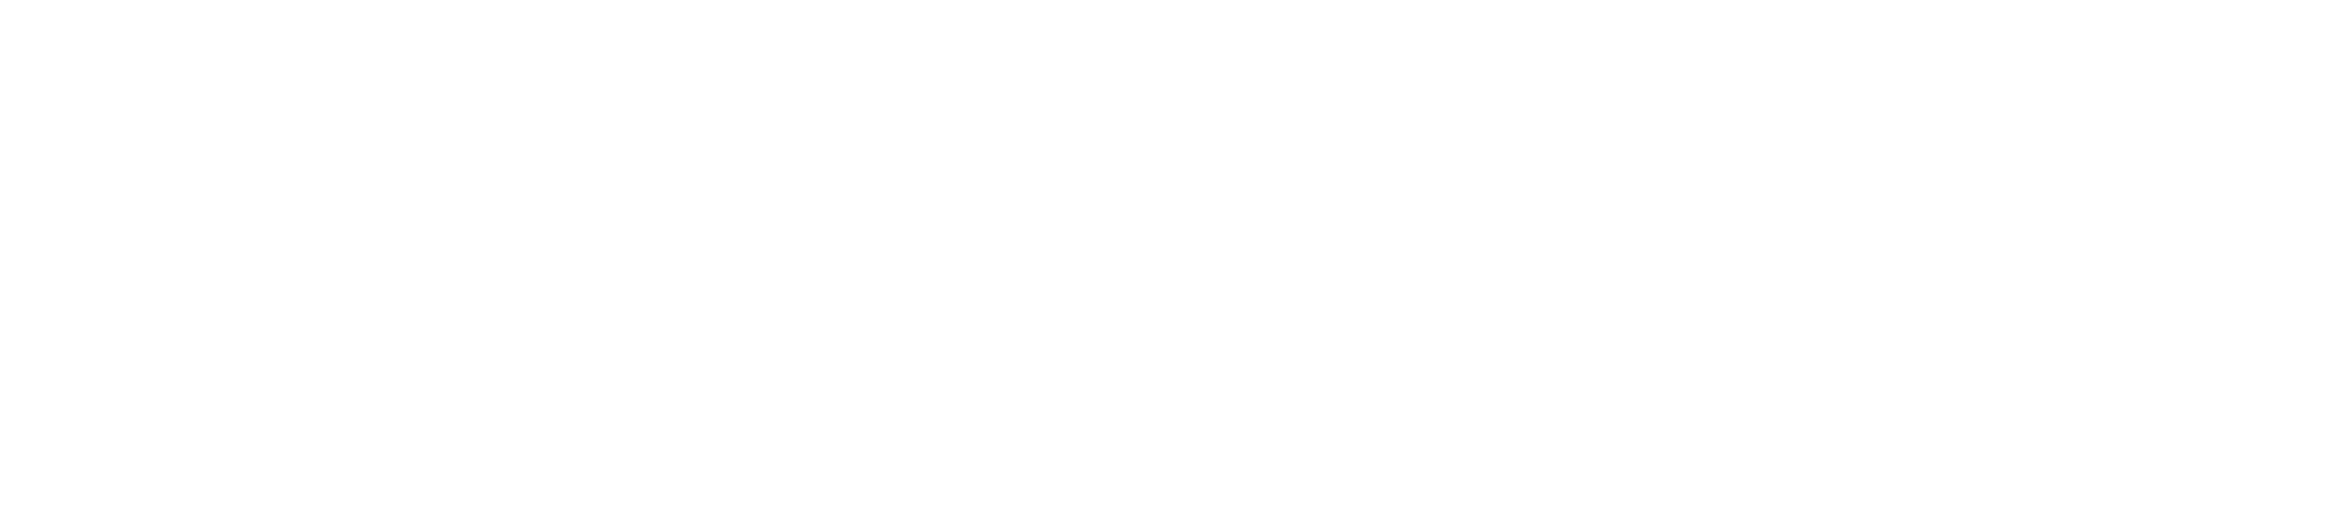 Tarrant Regional Water District